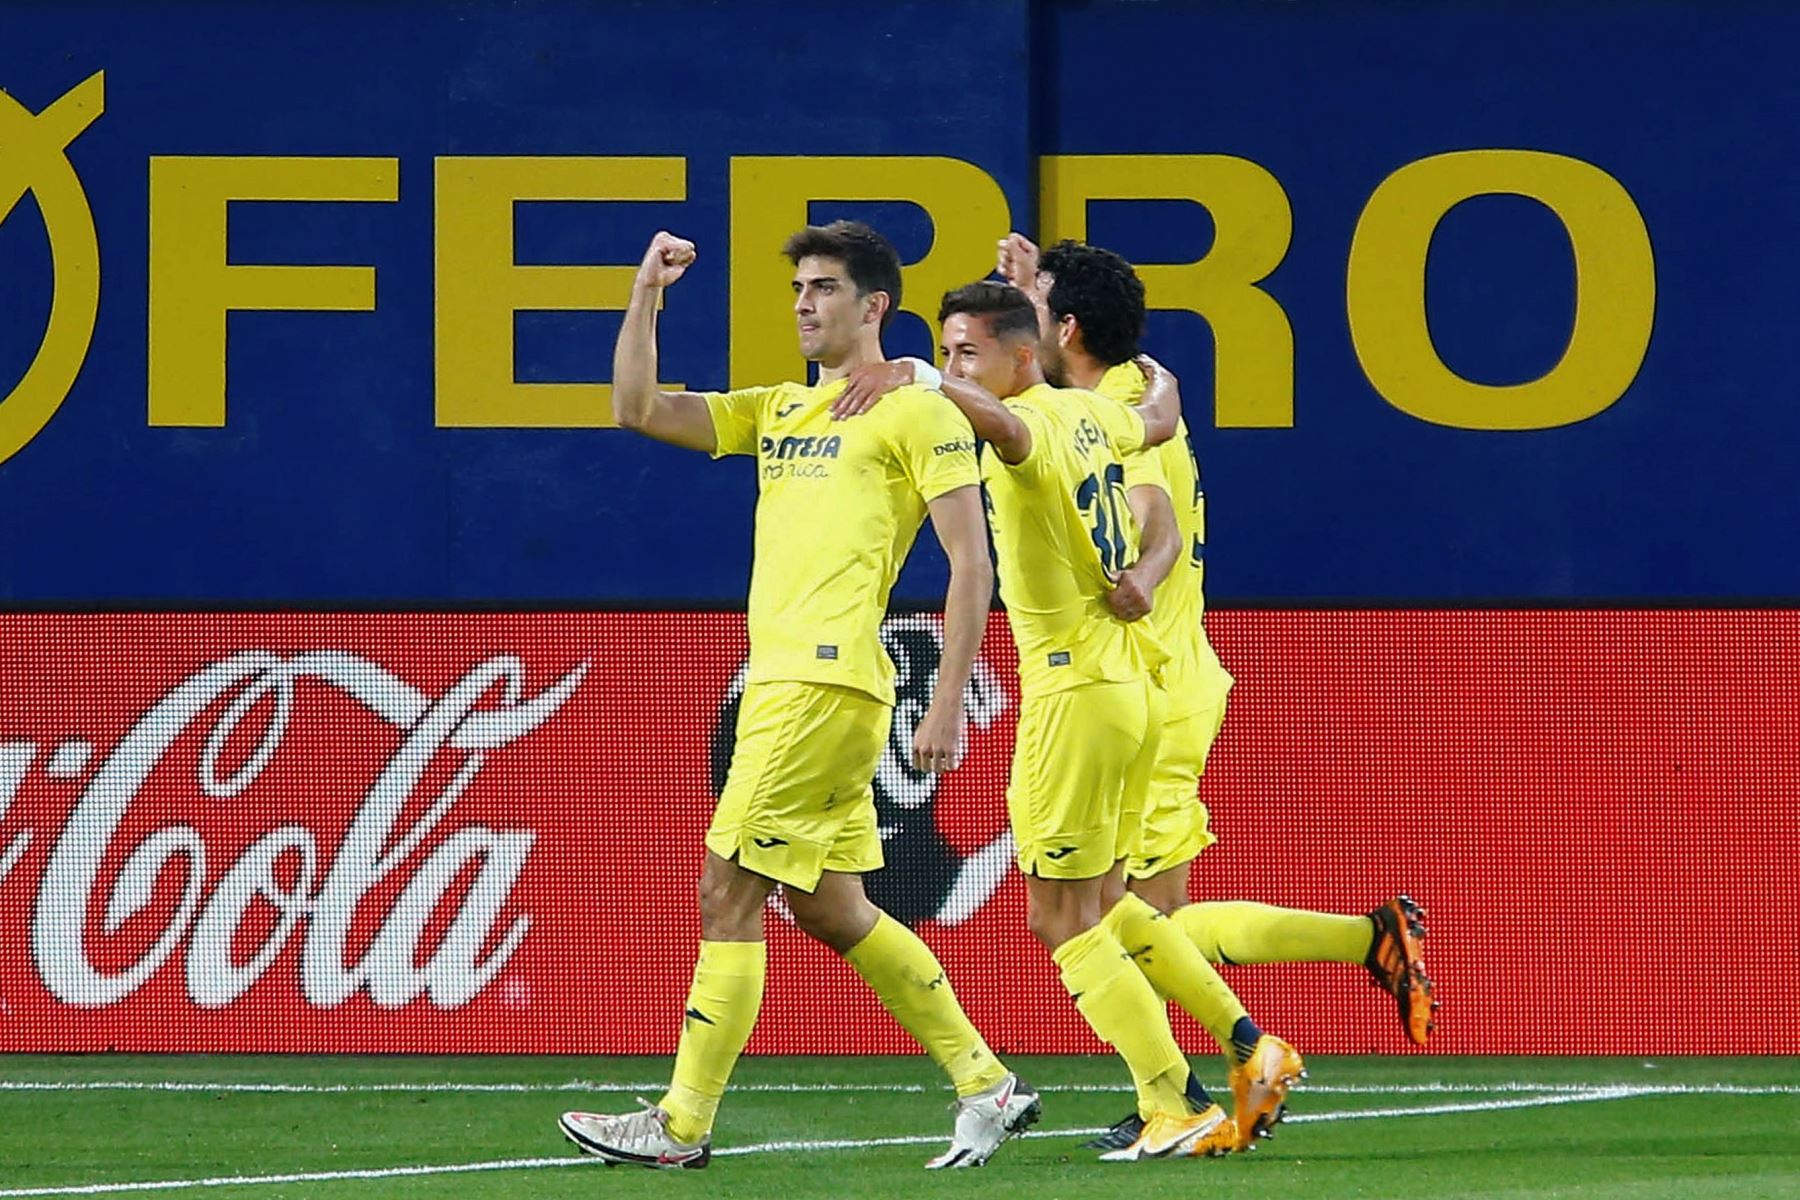 El delantero del Villarreal Gerard Moreno celebra tras marcar gol ante el Real Madrid, durante el partido de Liga que disputan en el estadio de la Cerámica. Foto: EFE